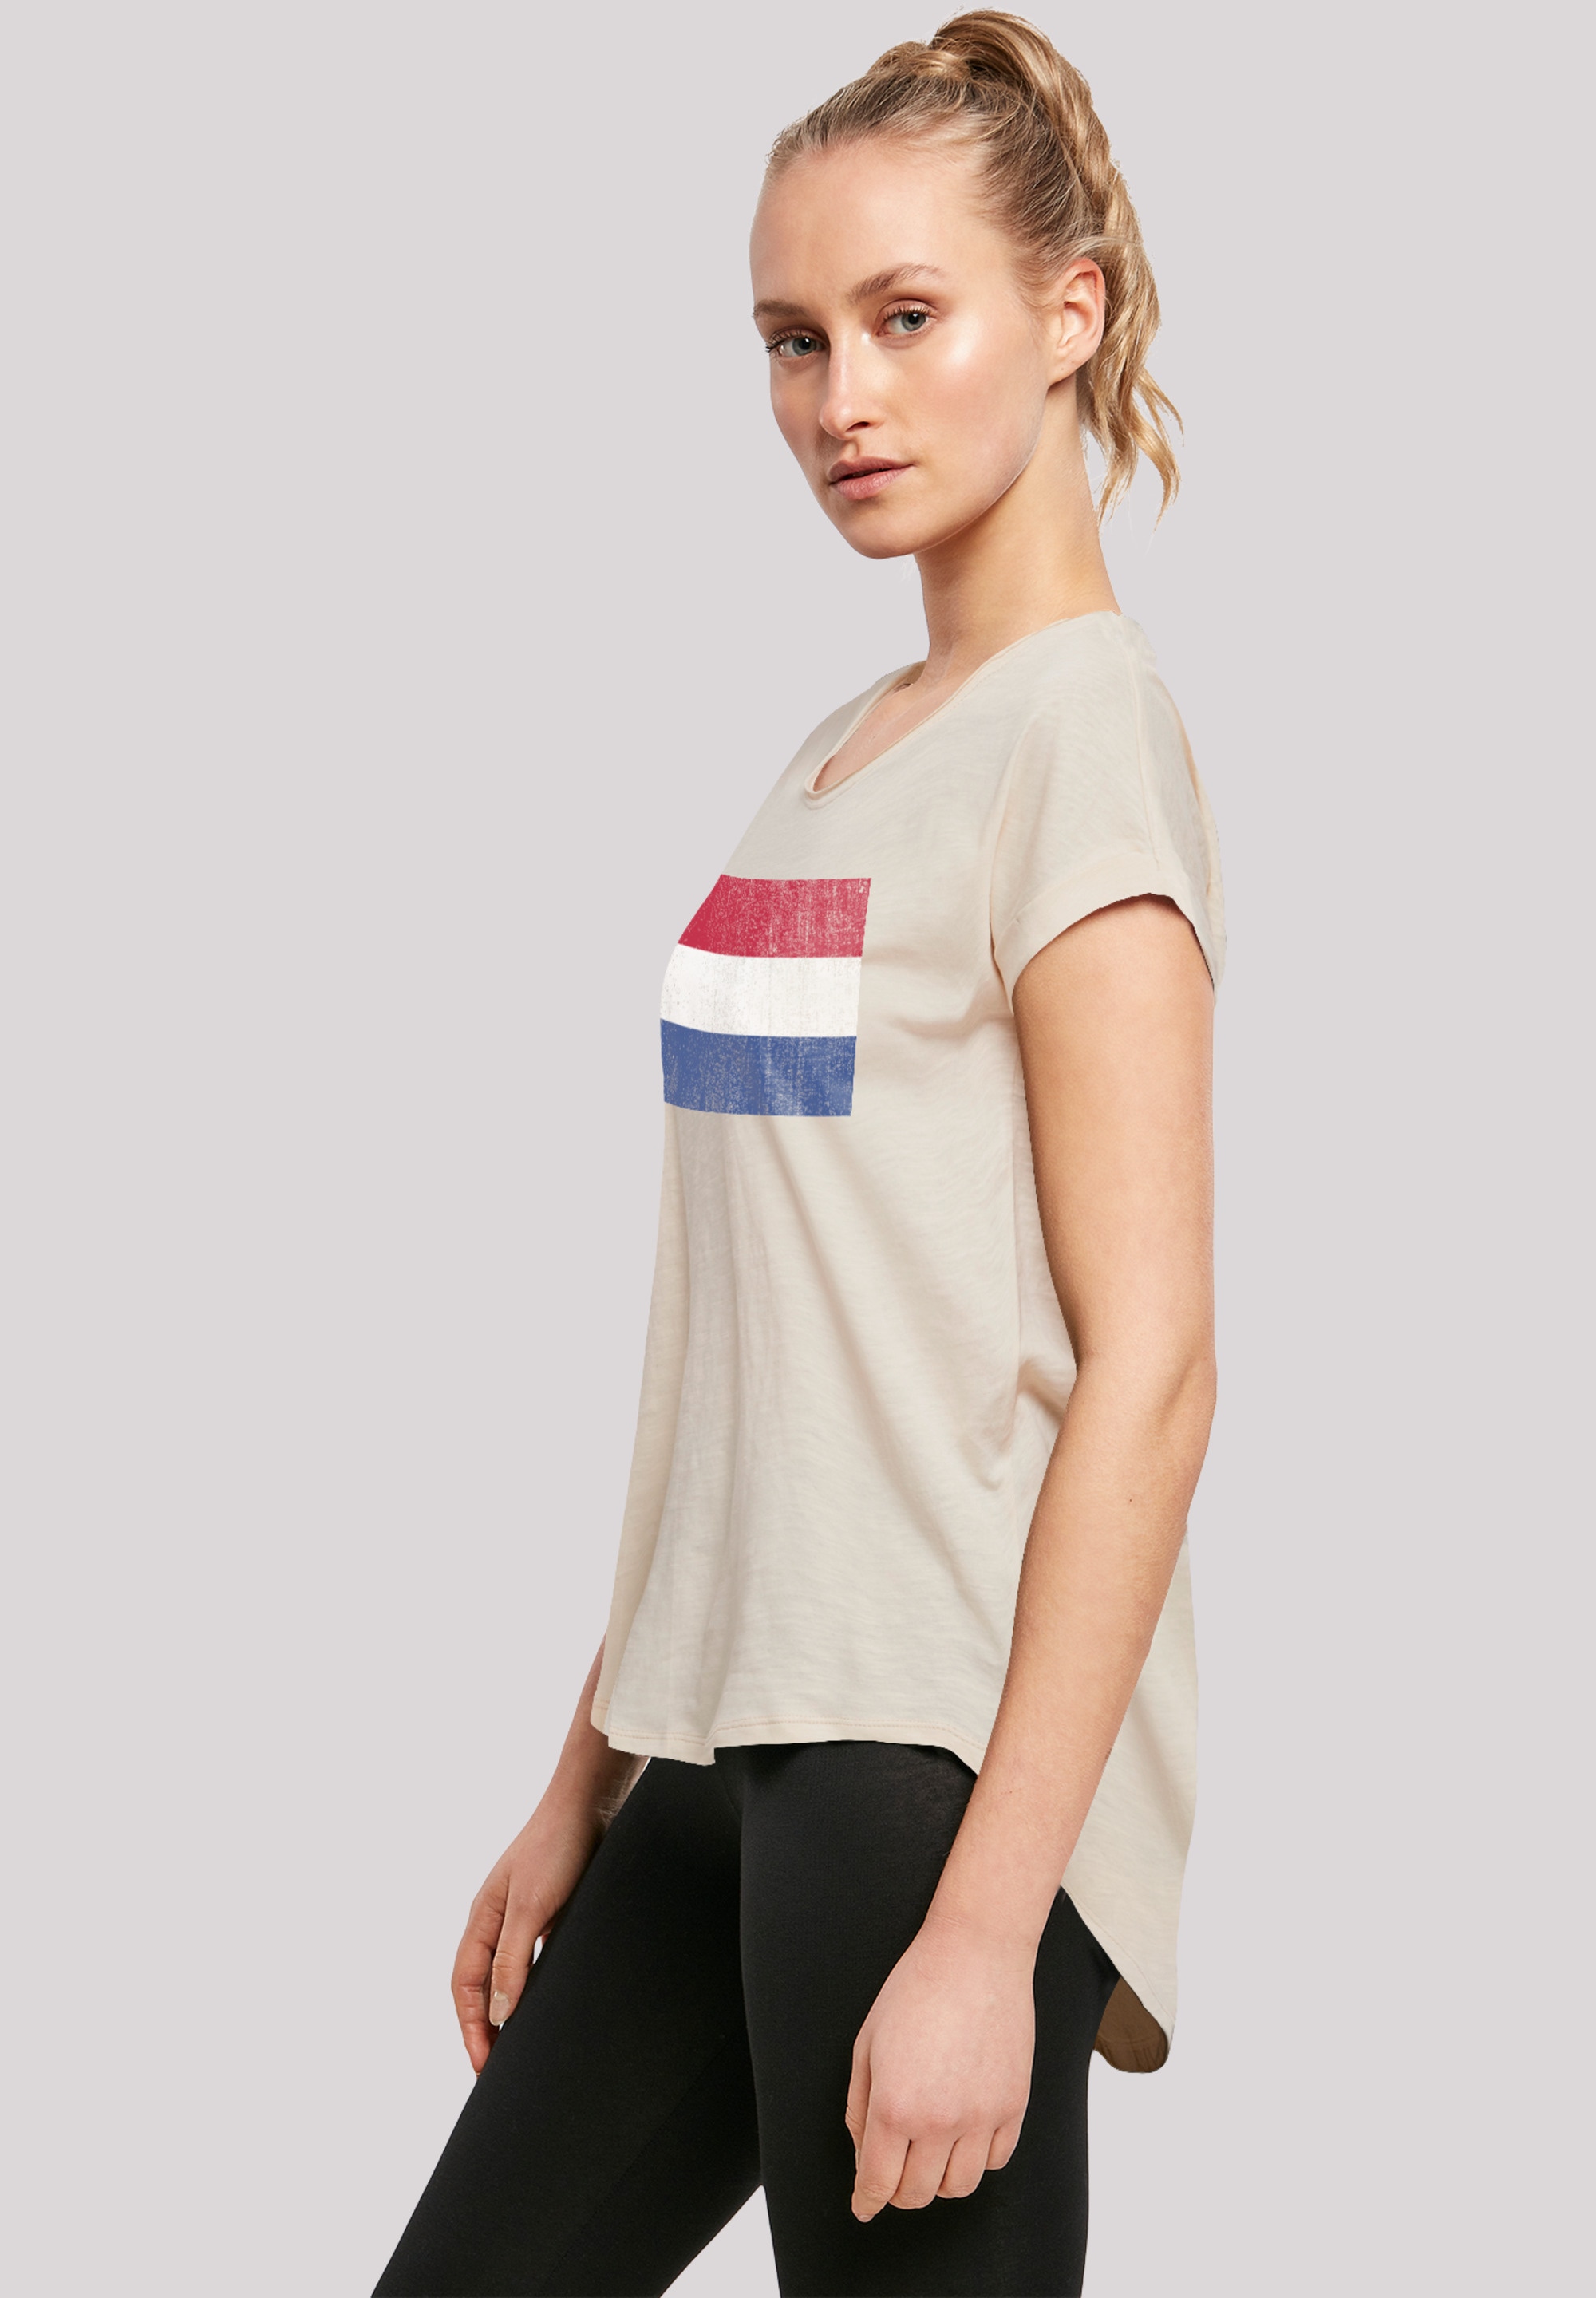 Flagge BAUR T-Shirt Holland F4NT4STIC »Netherlands Print NIederlande für | kaufen distressed«,